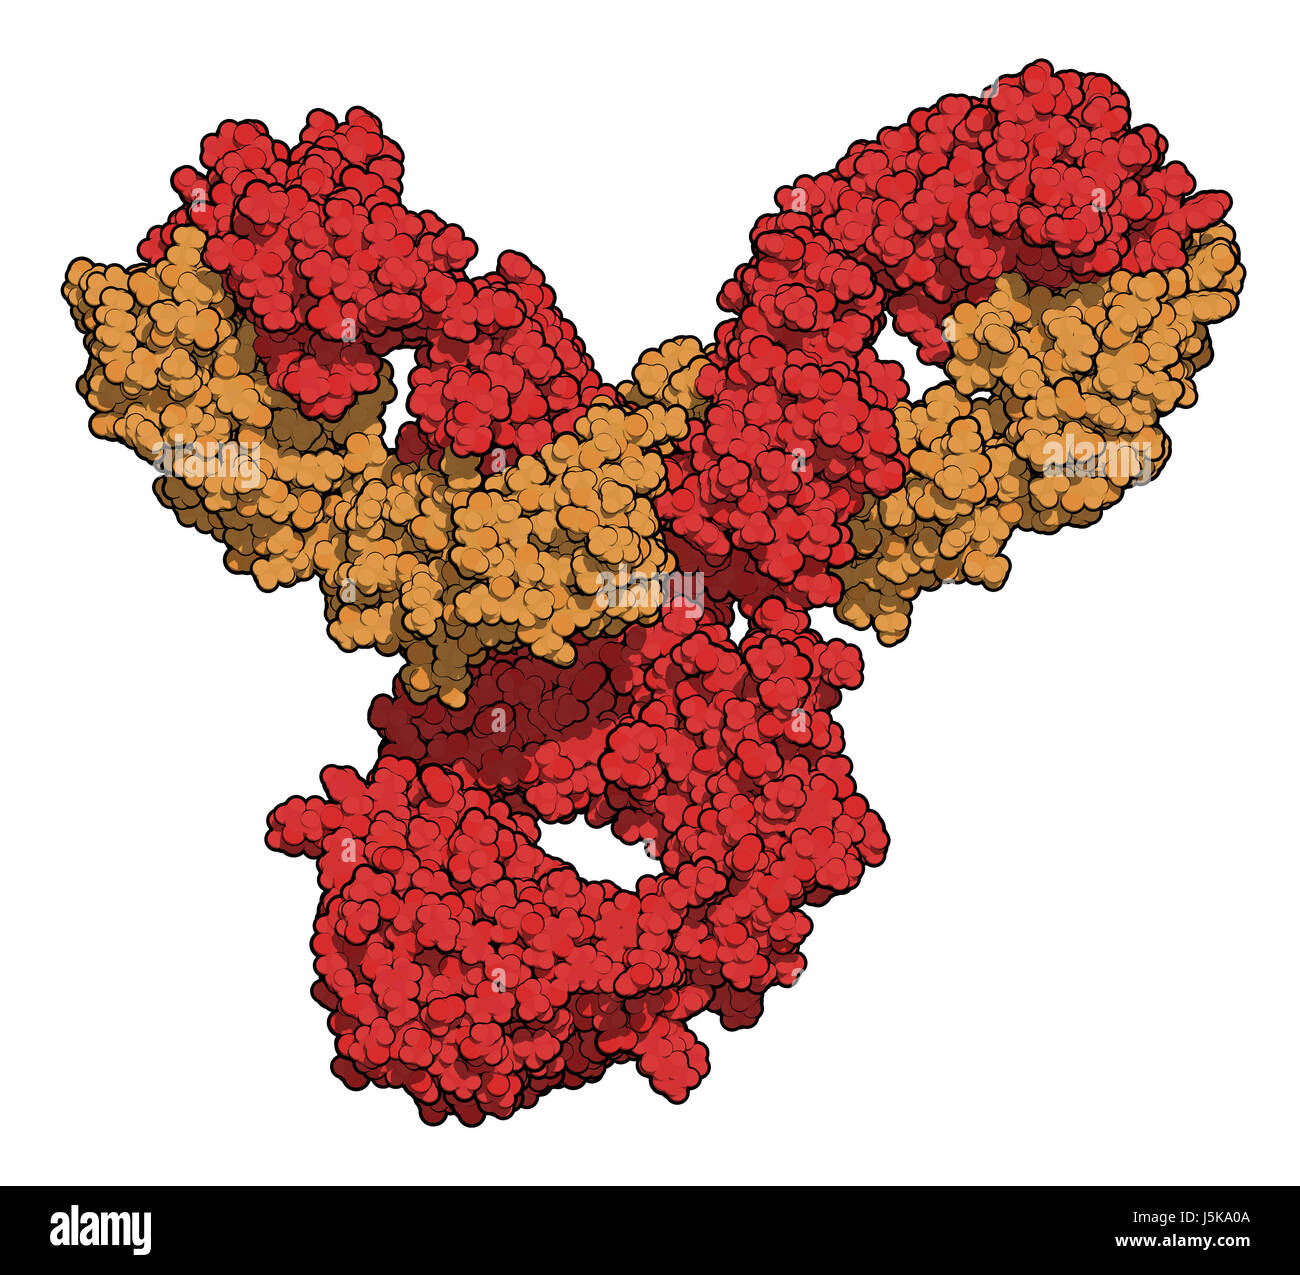 Pembrolizumab anticorpo monoclonale proteina farmaco. Immune inibitore di checkpoint preso di mira PD-1, utilizzato nel trattamento di un certo numero di cancri. Foto Stock